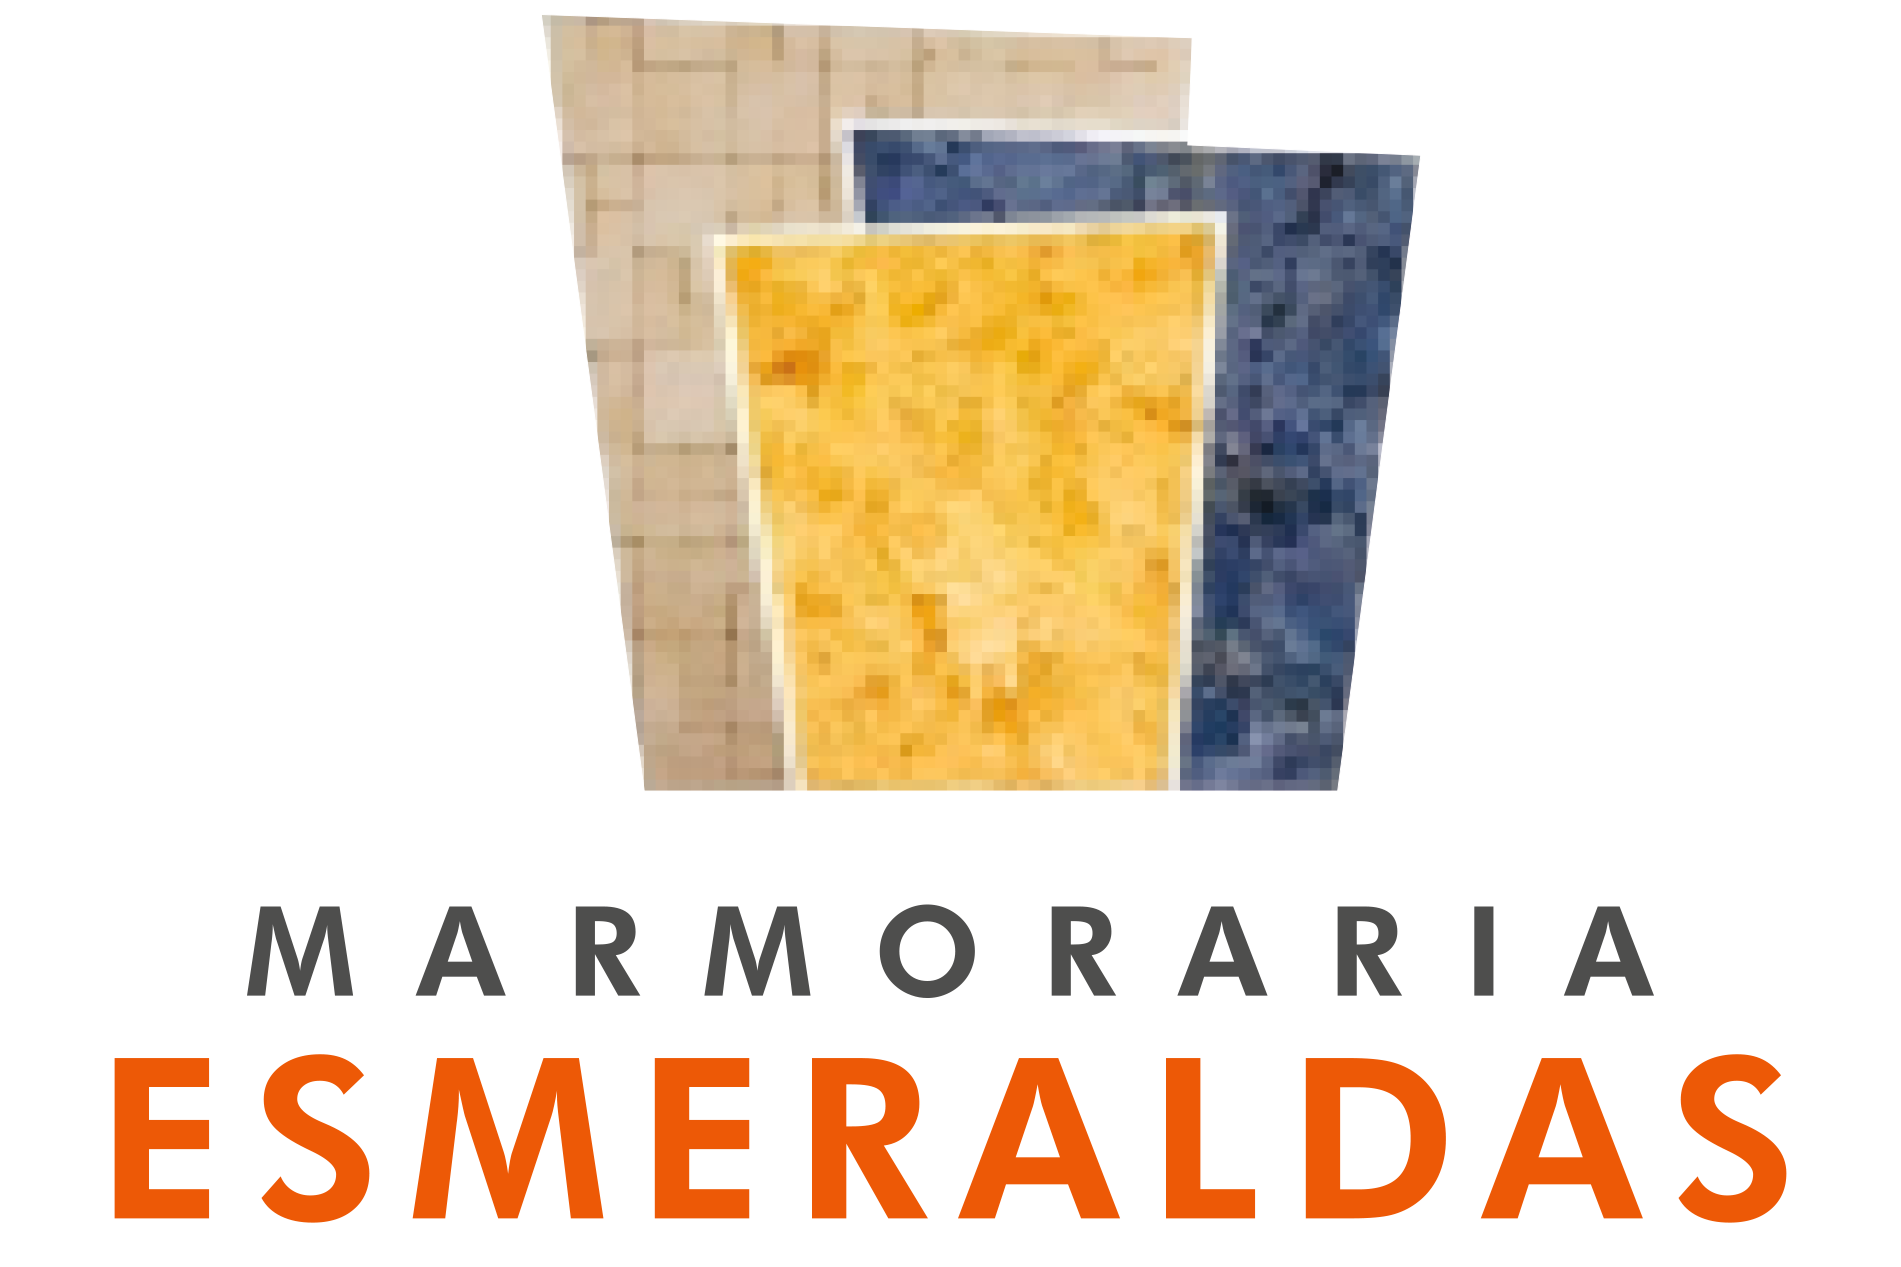 MARMORARIA ESMERALDAS